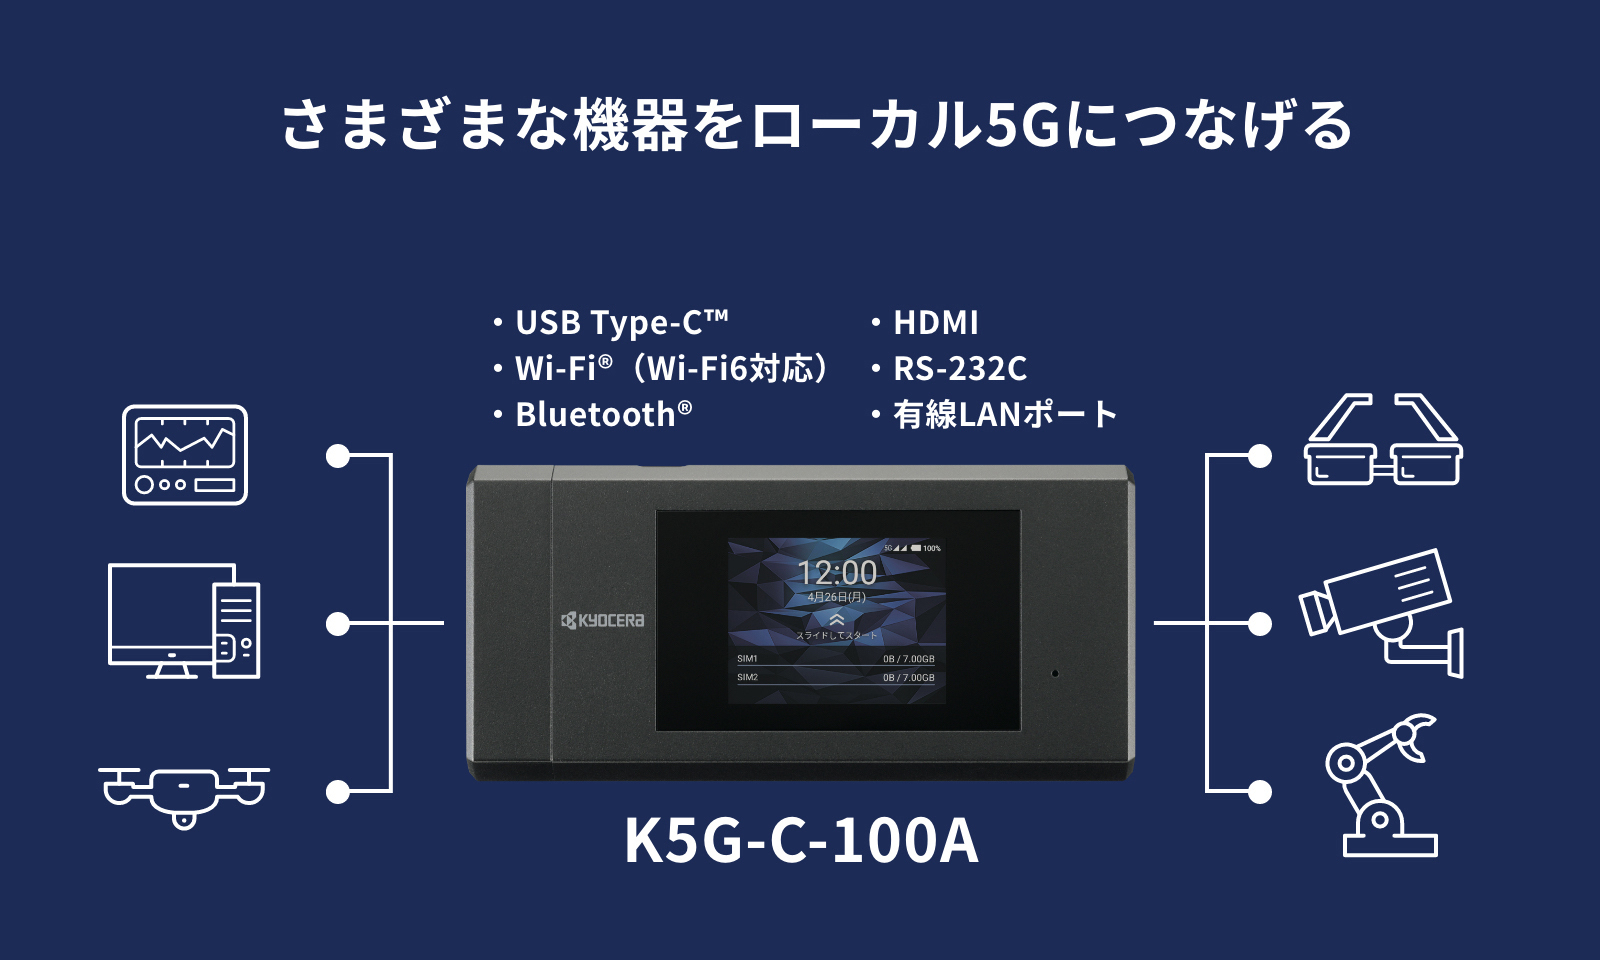 さまざまな機器をローカル5GにつなげるK5G-C-100A